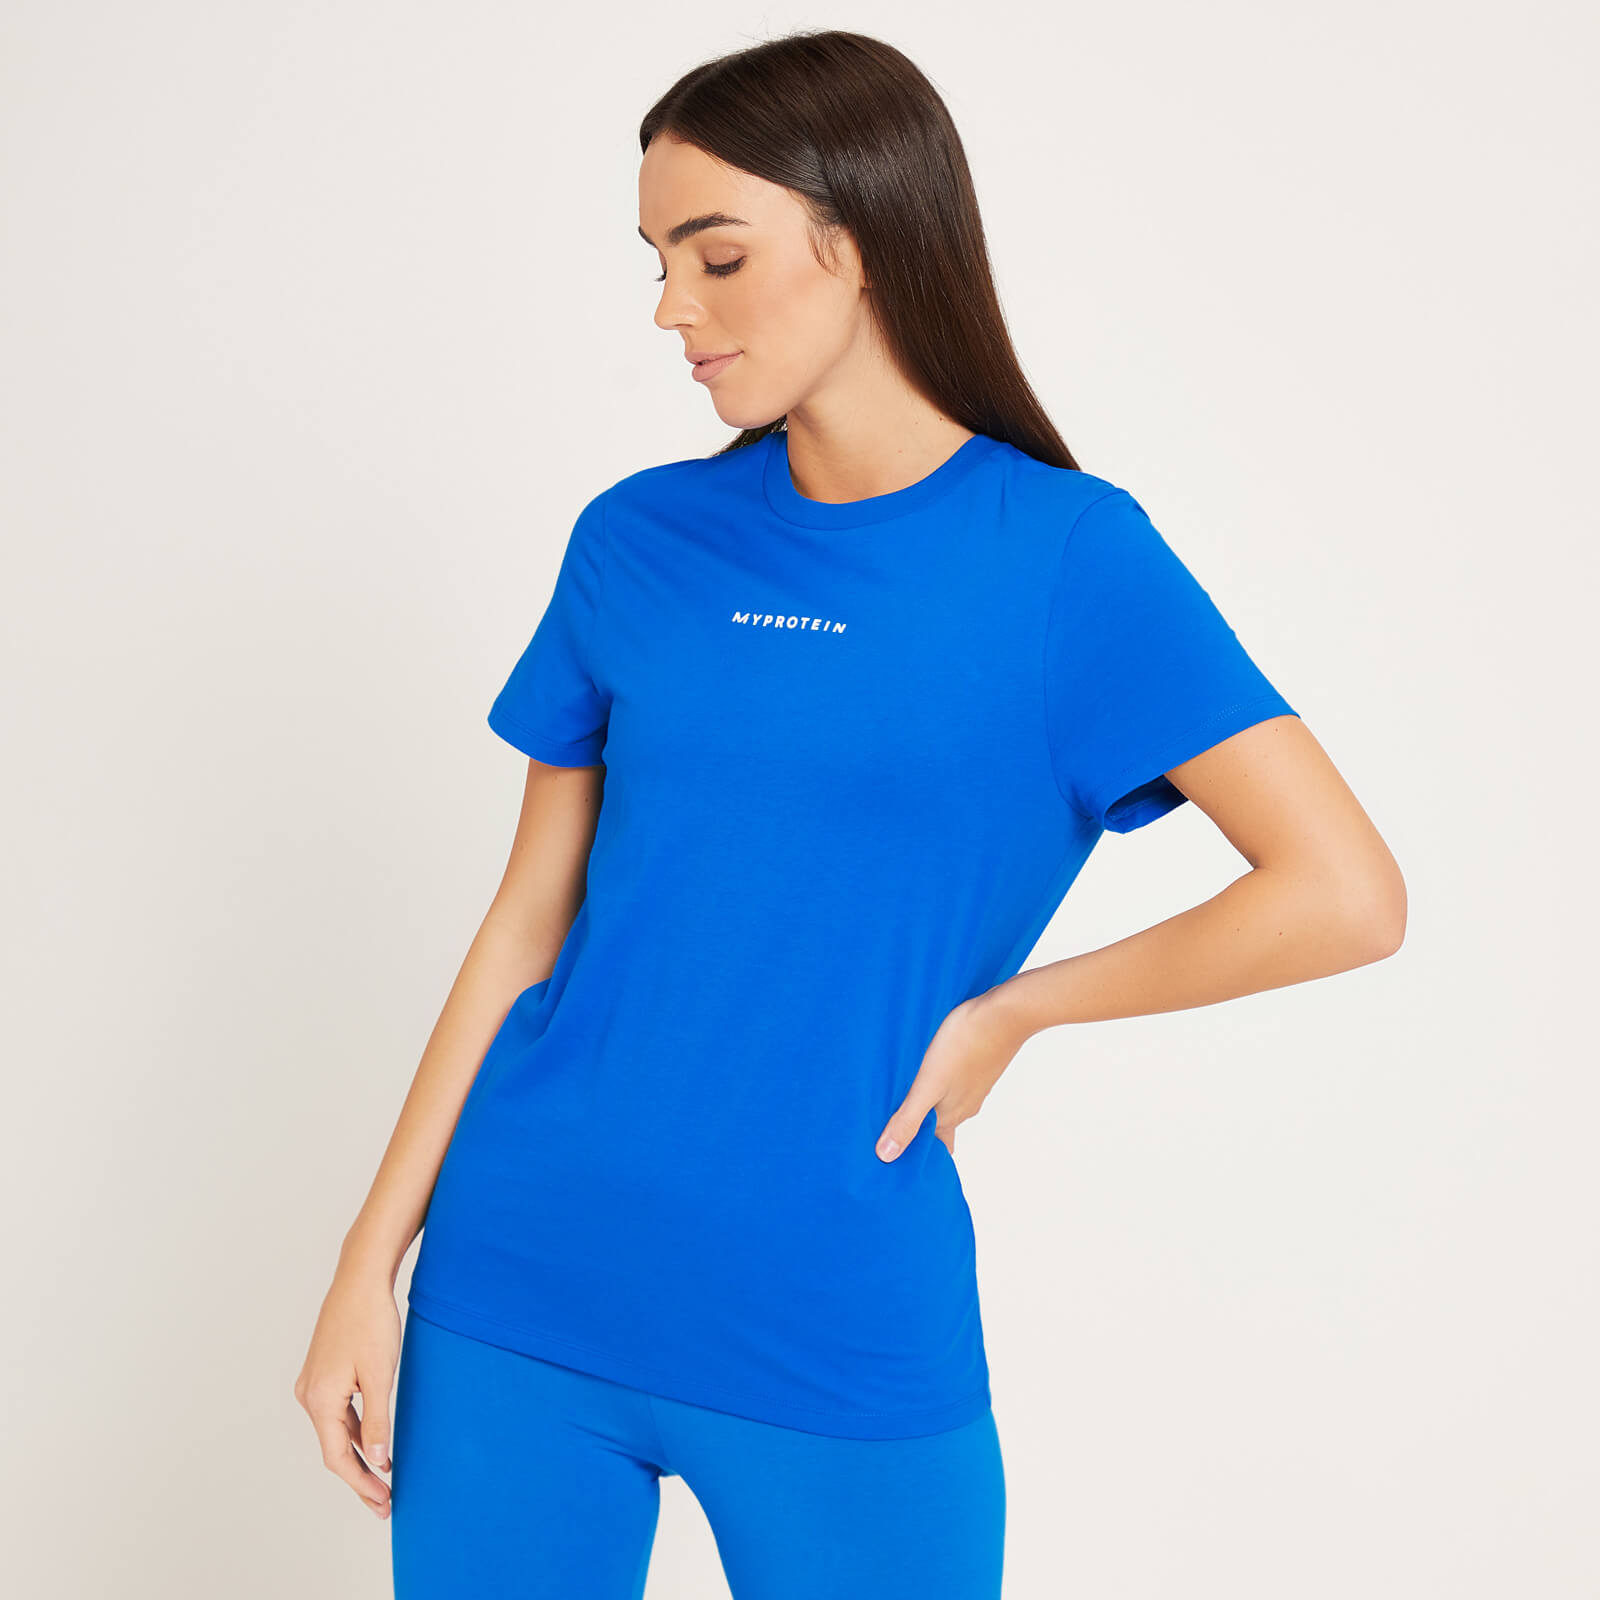 Camiseta Originals Contemporary para mujer de MP - Azul medio - XS